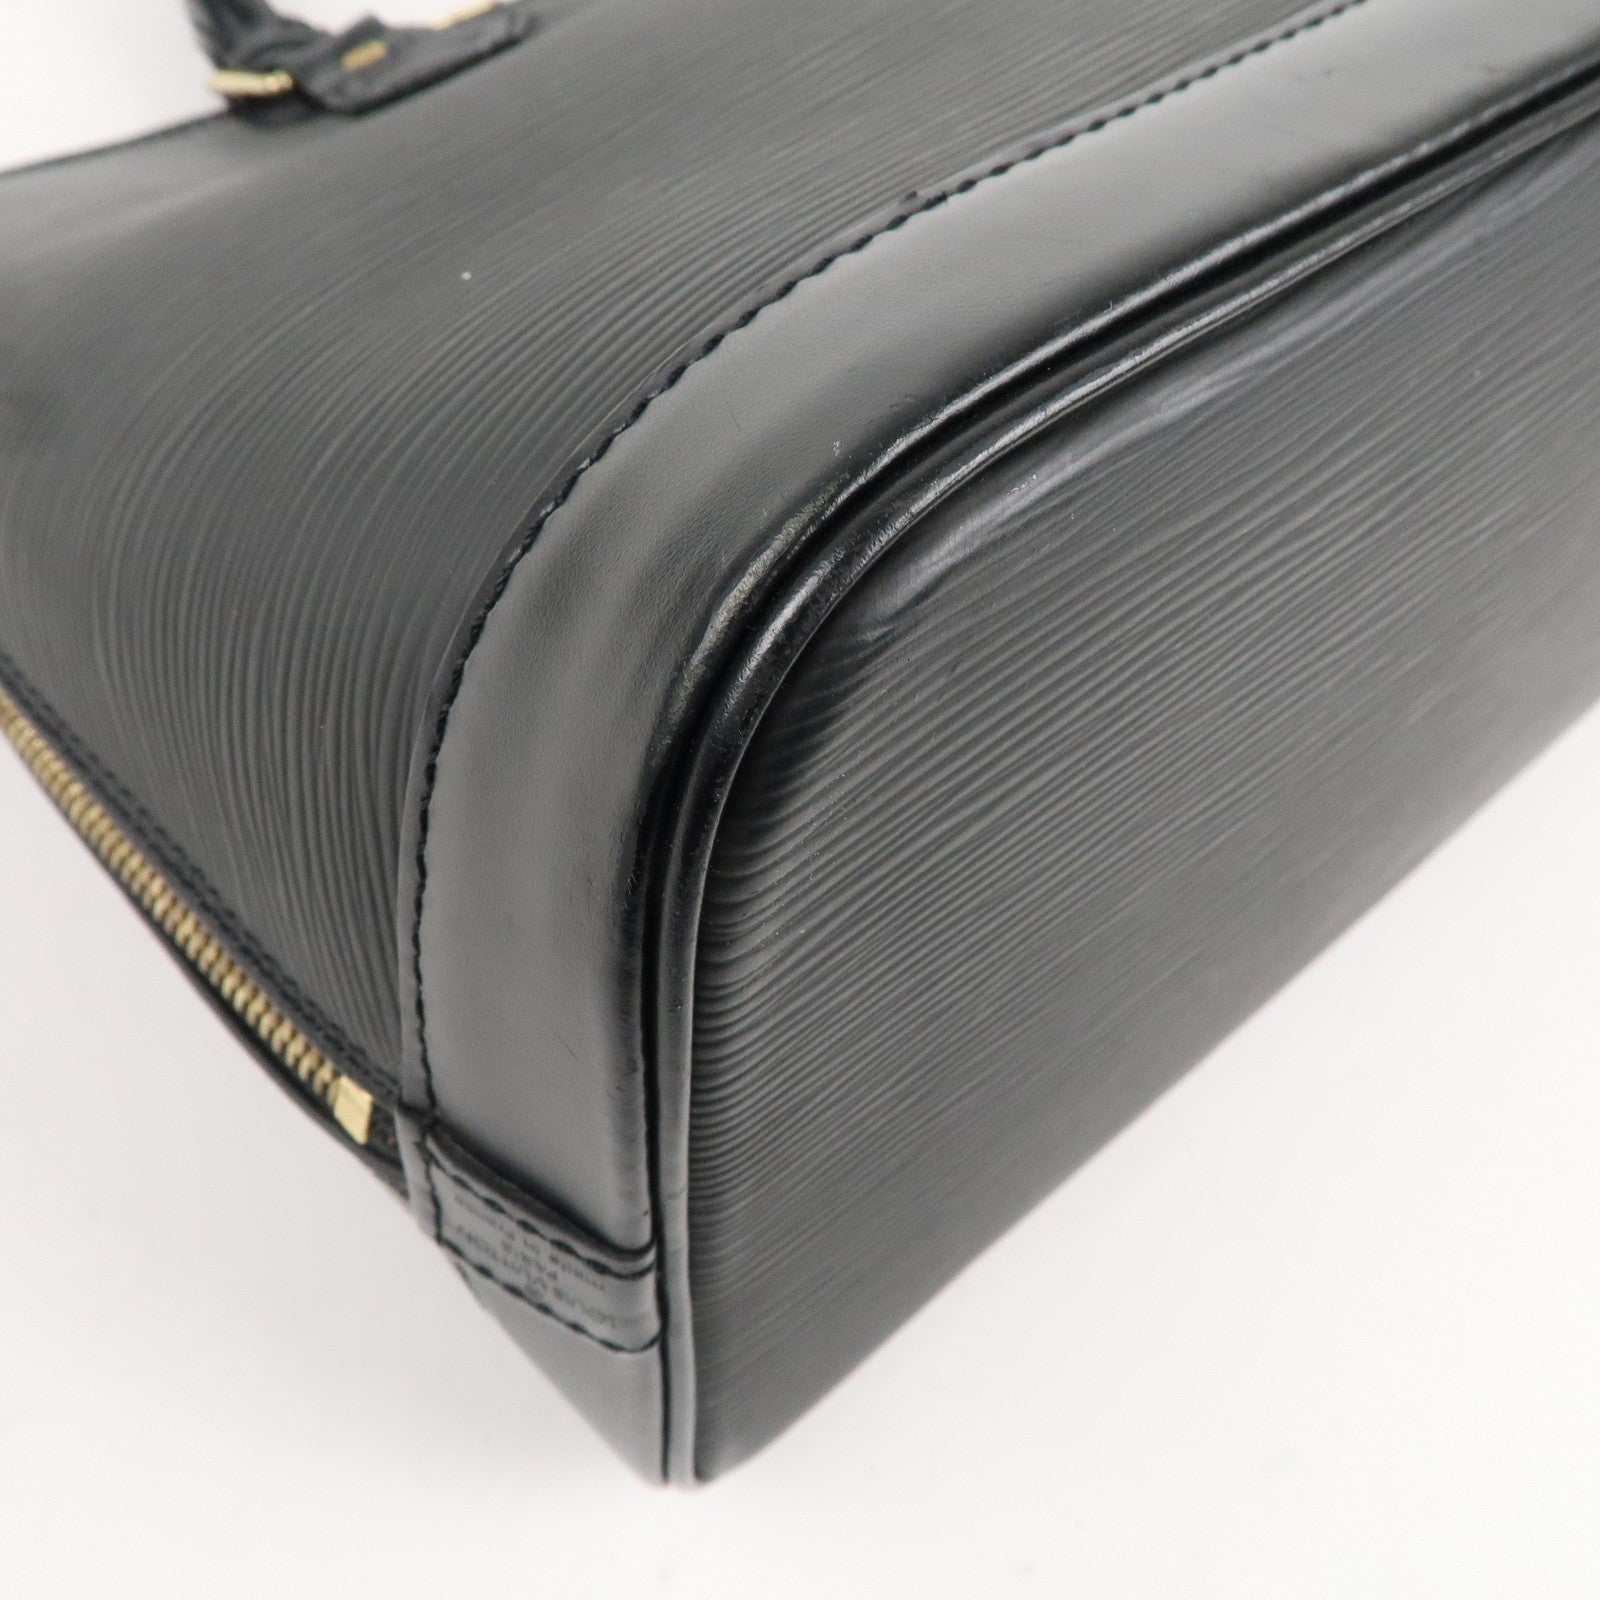 Louis-Vuitton-Epi-Alma-Hand-Bag-Noir-Black-M52142 – dct-ep_vintage